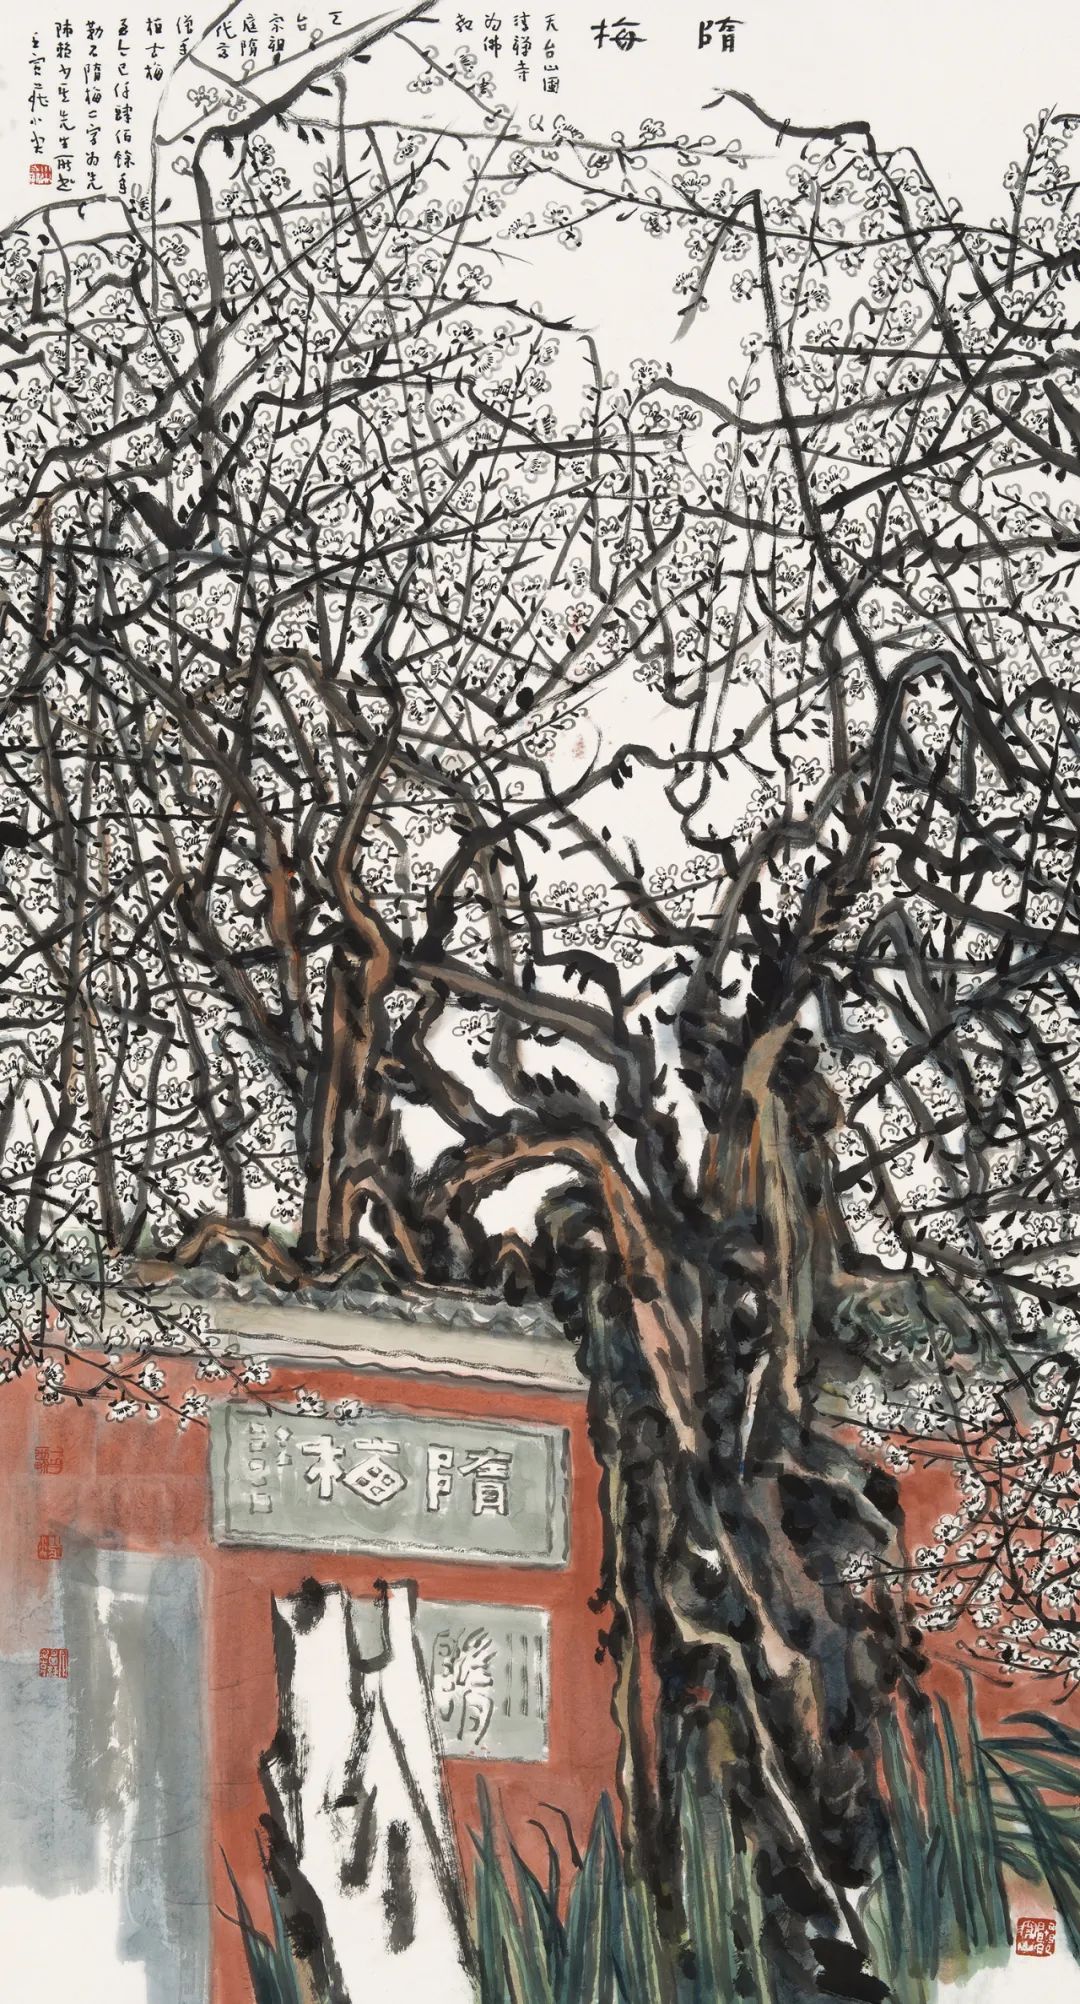 大气磅礴 浑厚华滋——著名艺术家庄小尖书画展1月11日将在广东潮州开展